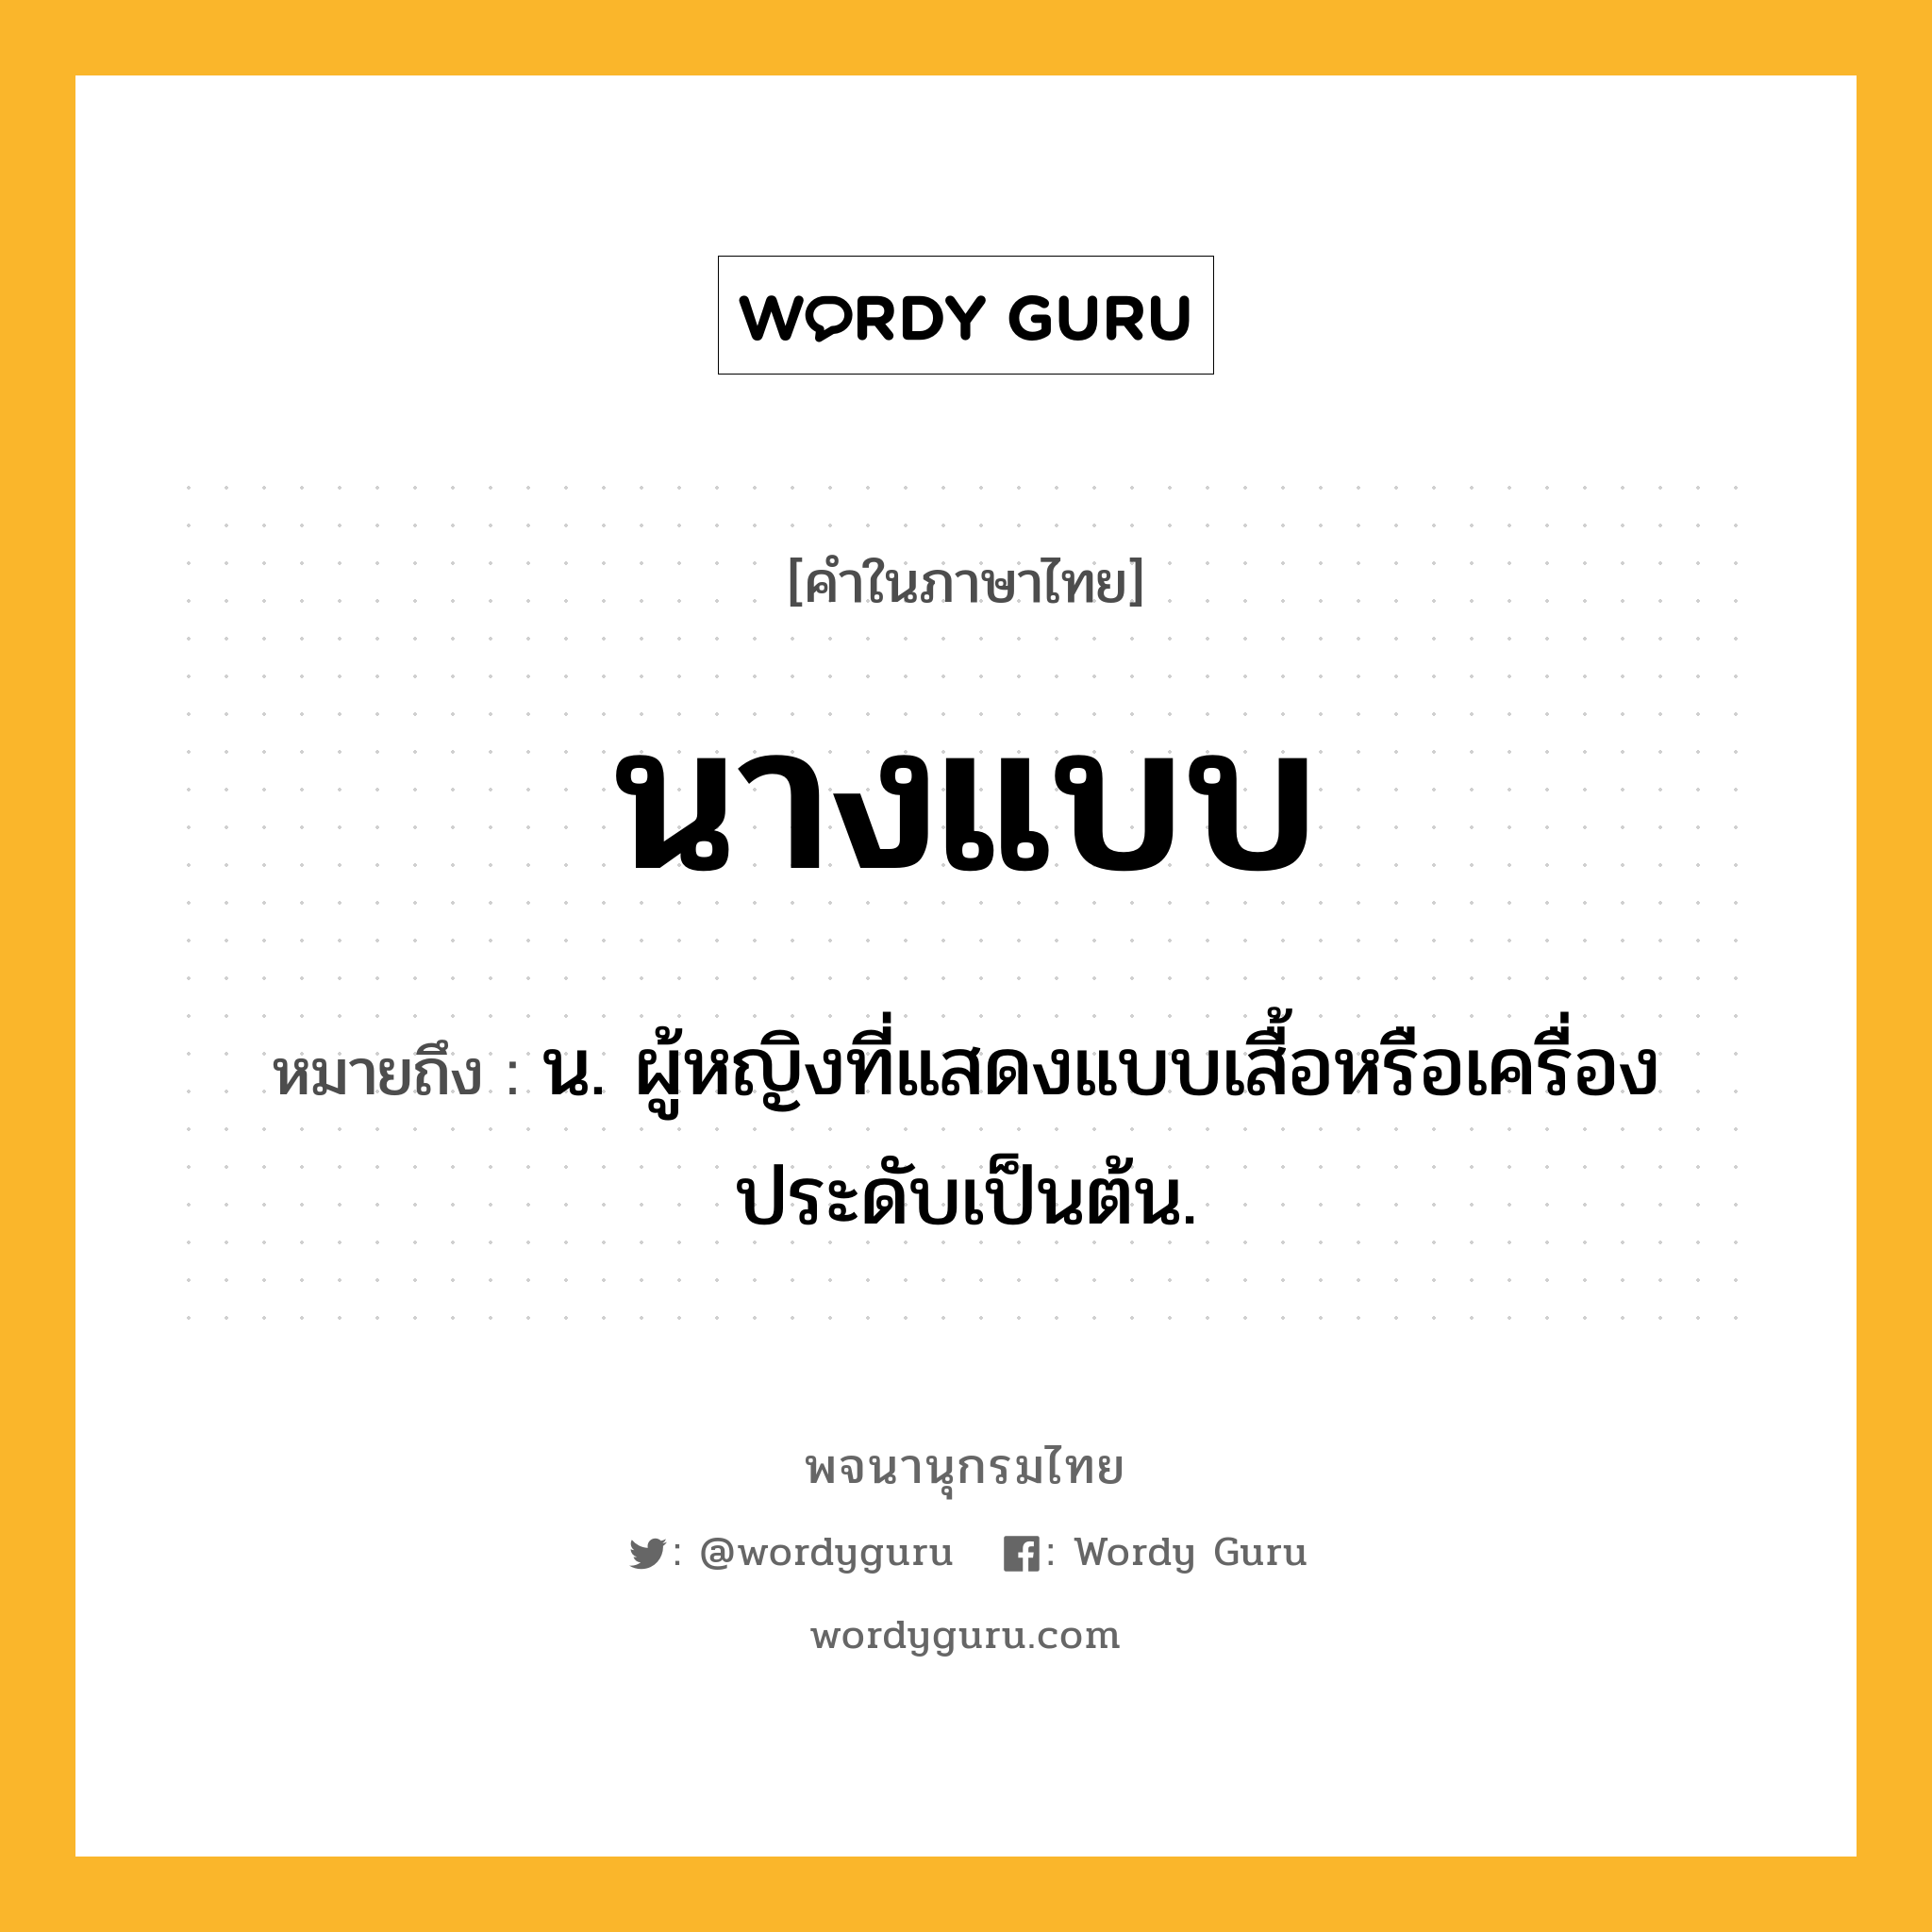 นางแบบ ความหมาย หมายถึงอะไร?, คำในภาษาไทย นางแบบ หมายถึง น. ผู้หญิงที่แสดงแบบเสื้อหรือเครื่องประดับเป็นต้น.